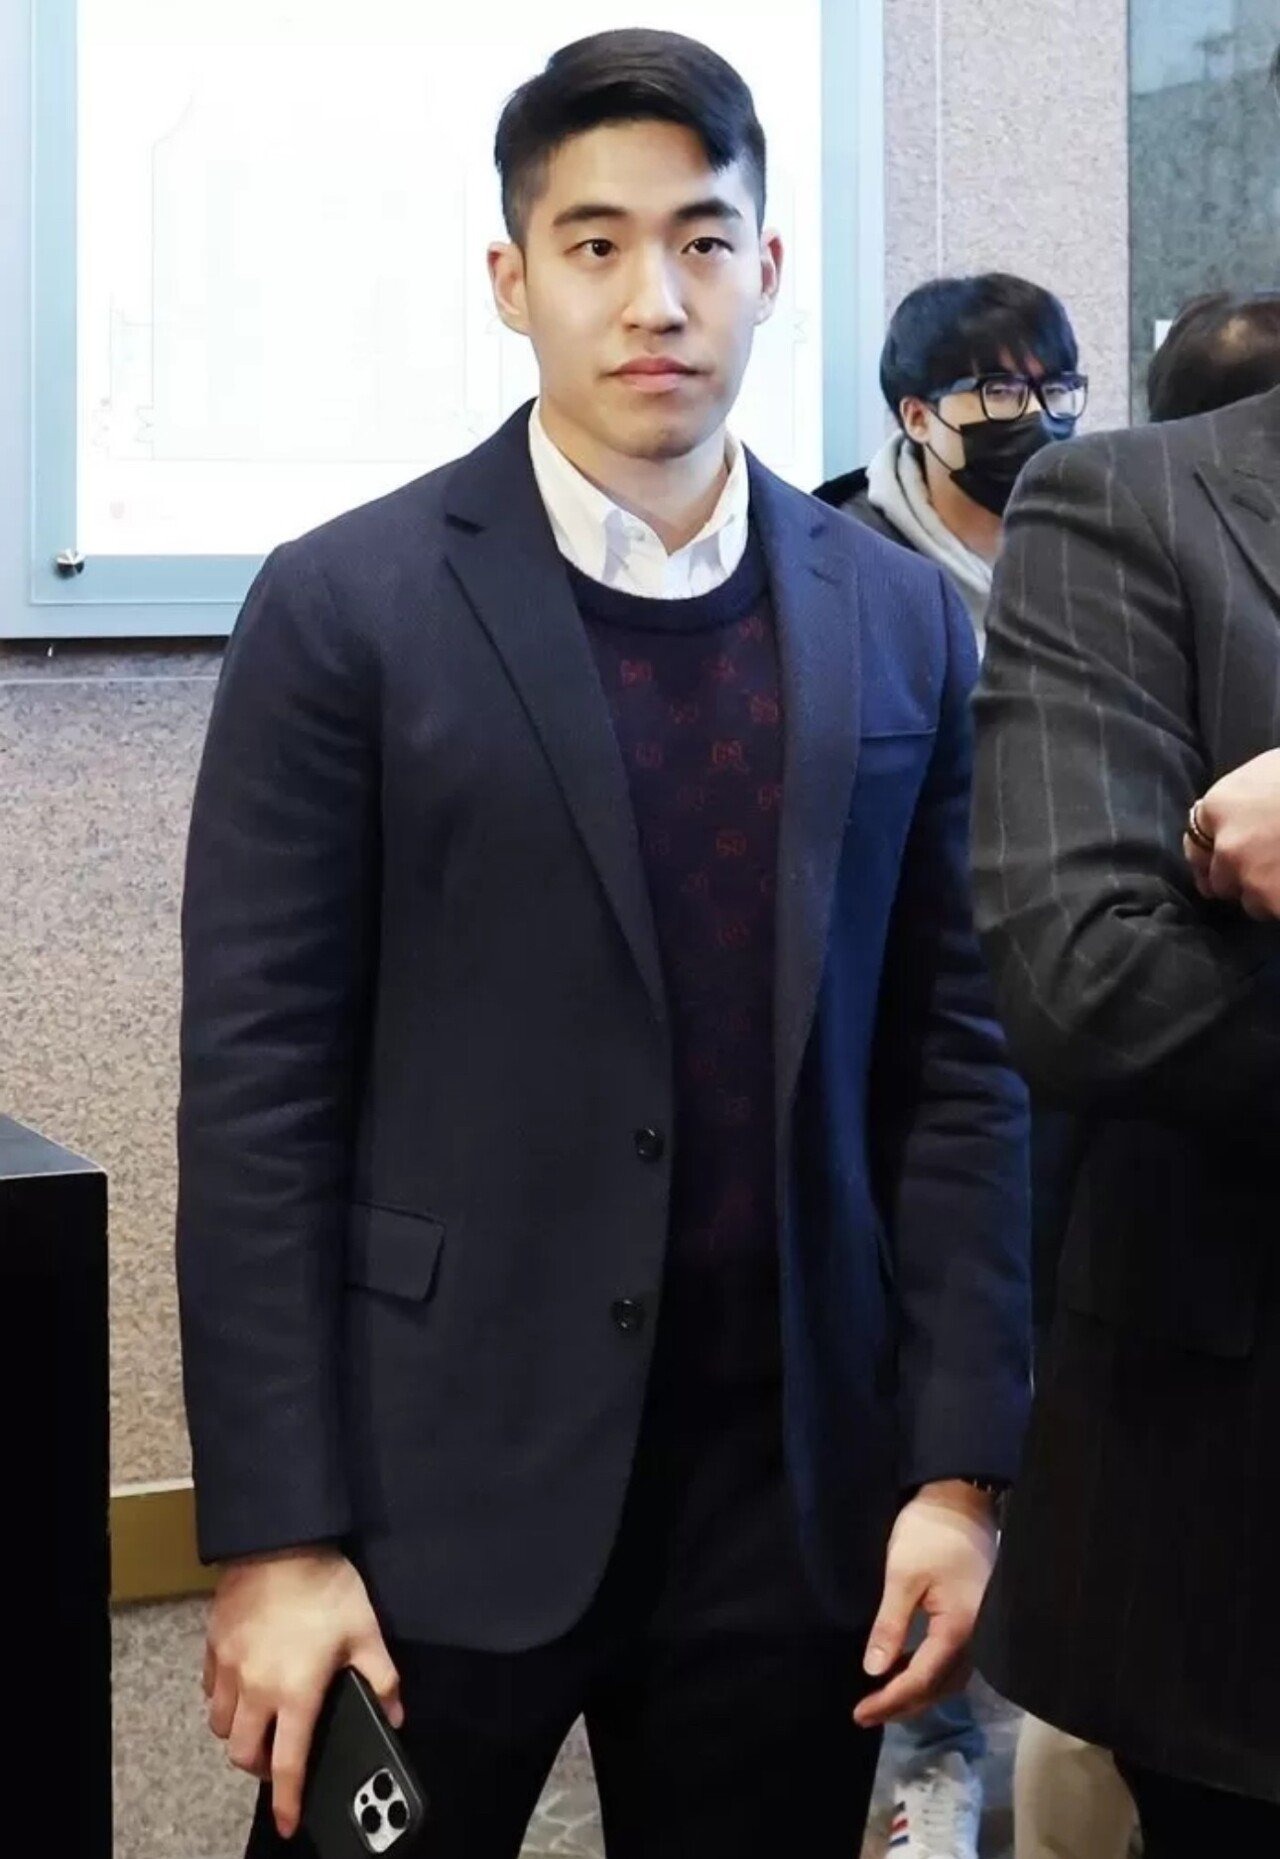 Con trai Go Hyun Jung: Cháu trai đế chế Samsung lựa chọn đi lên từ vị trí thấp, gây bão với "visual" chuẩn mỹ nam- Ảnh 5.